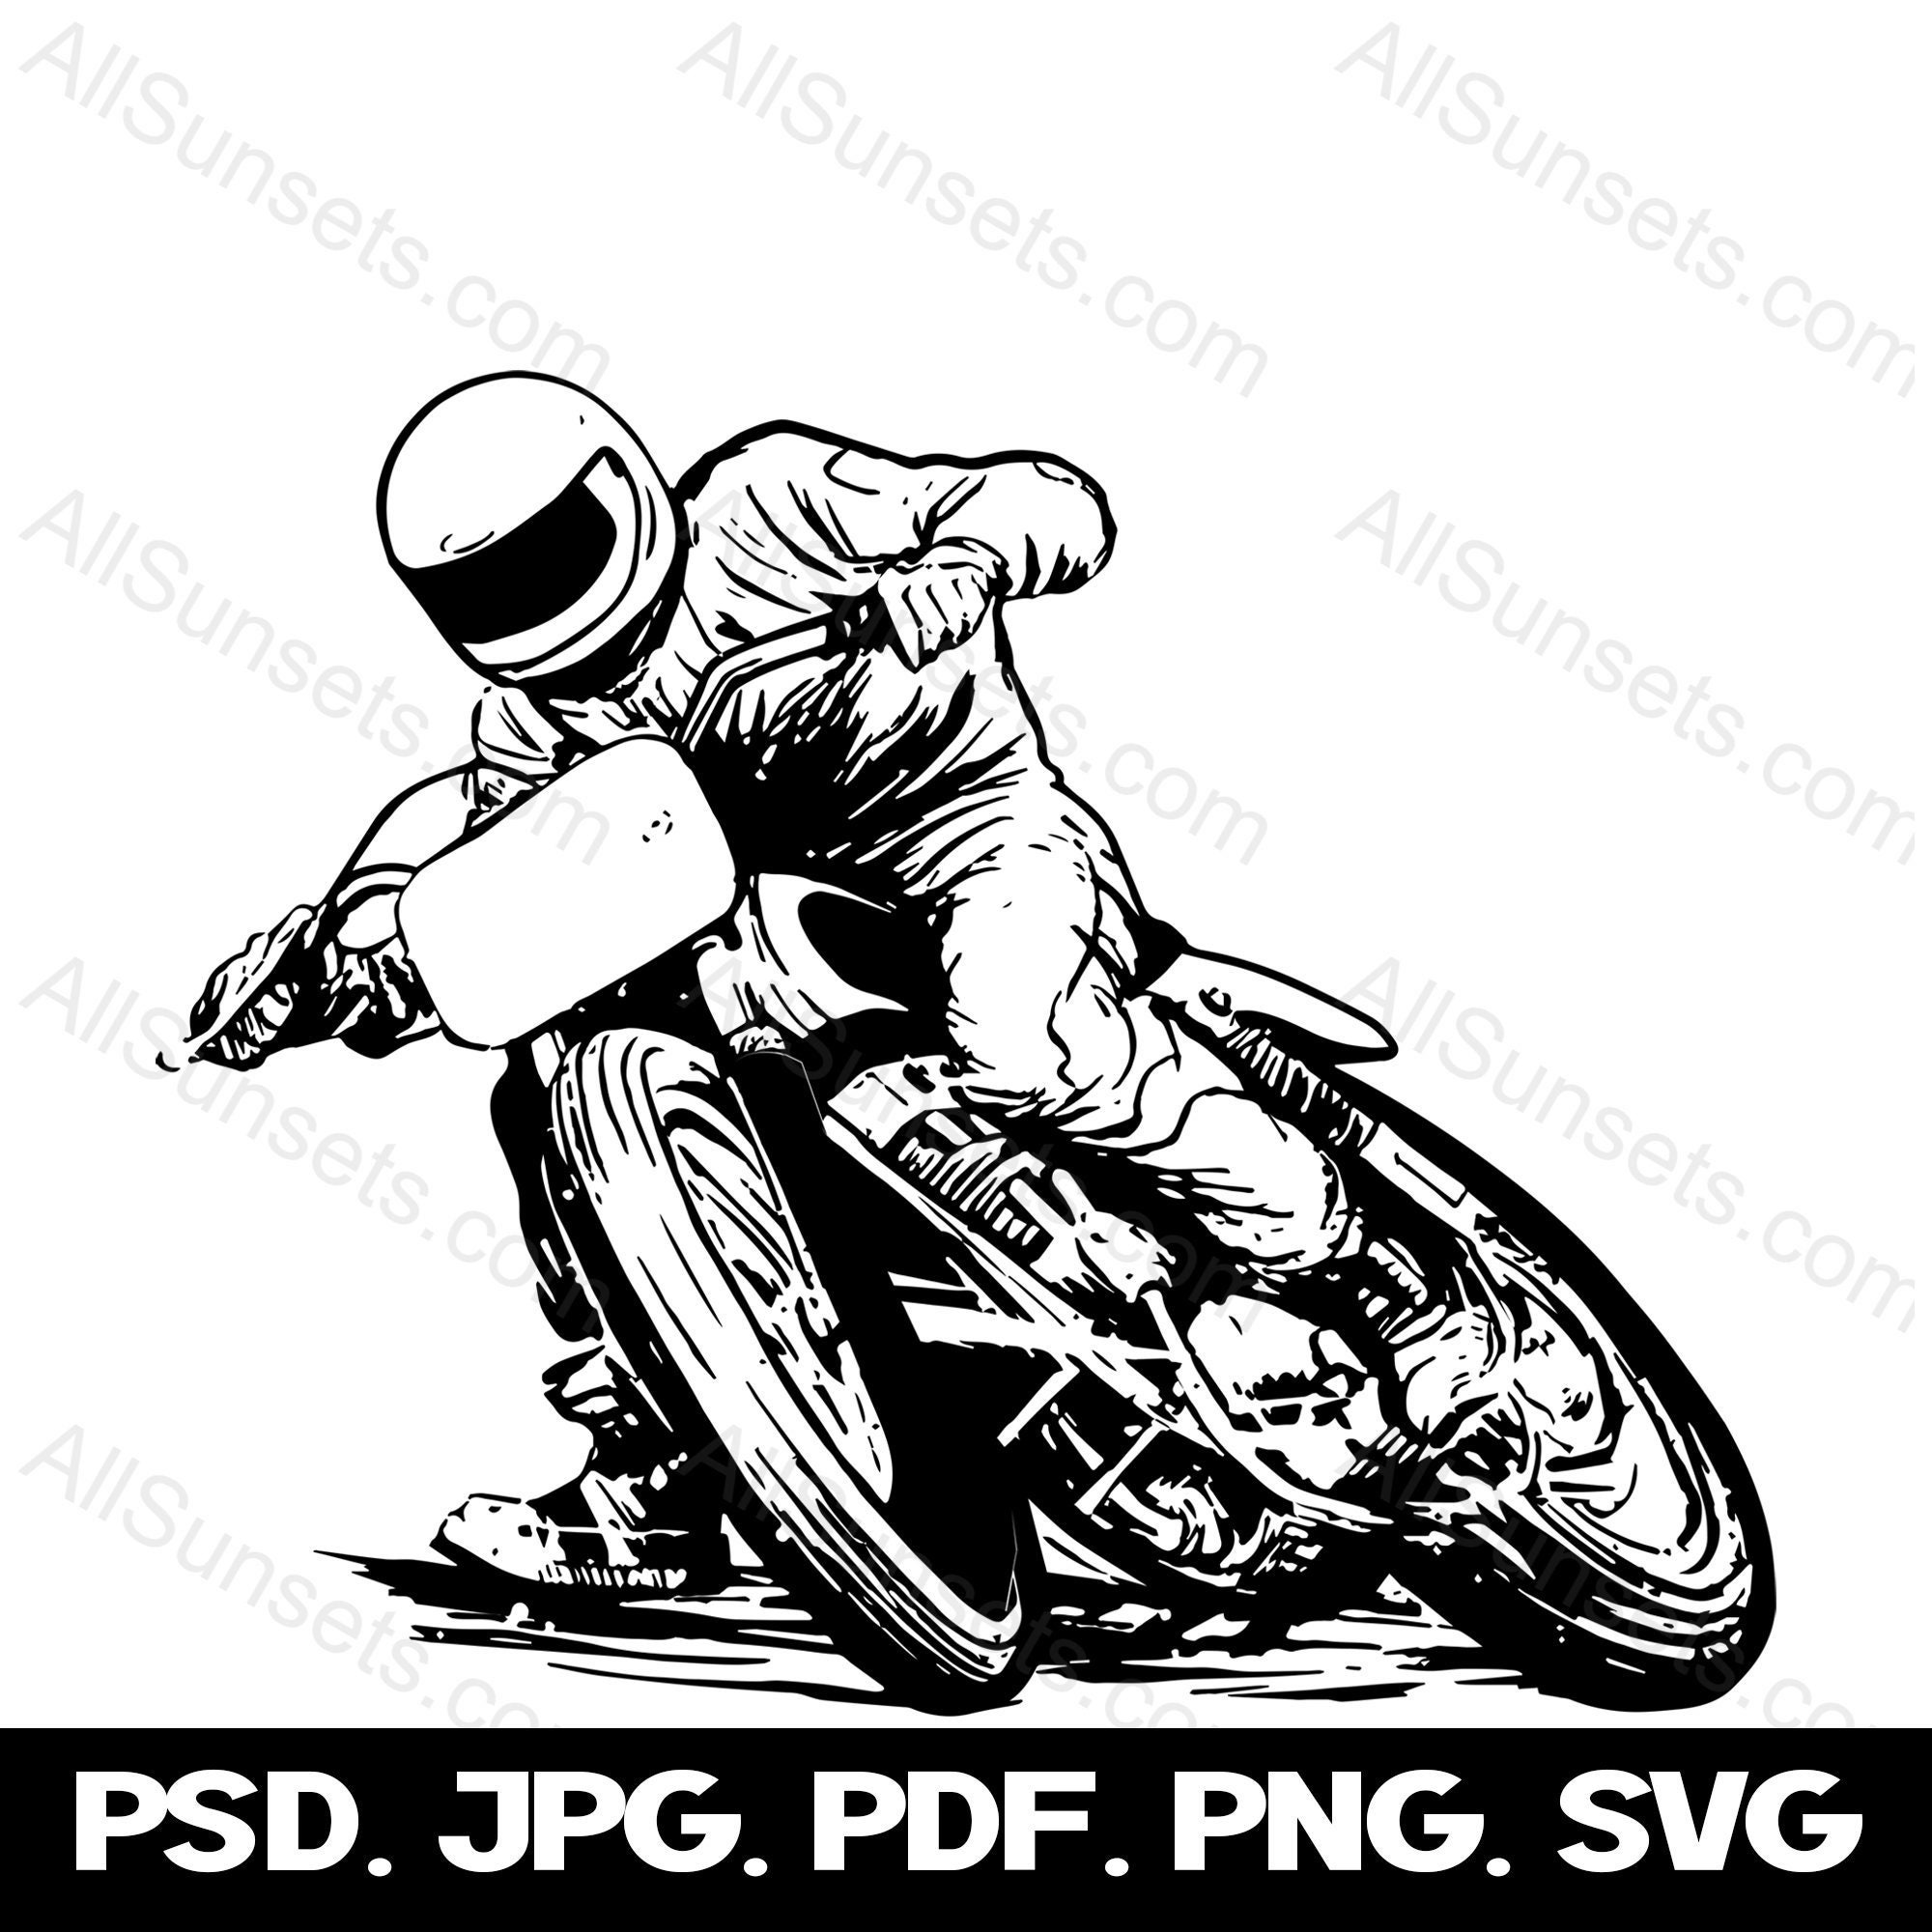 Vetor De Corrida De Equitação Moto Esporte Royalty Free SVG, Cliparts,  Vetores, e Ilustrações Stock. Image 134100492